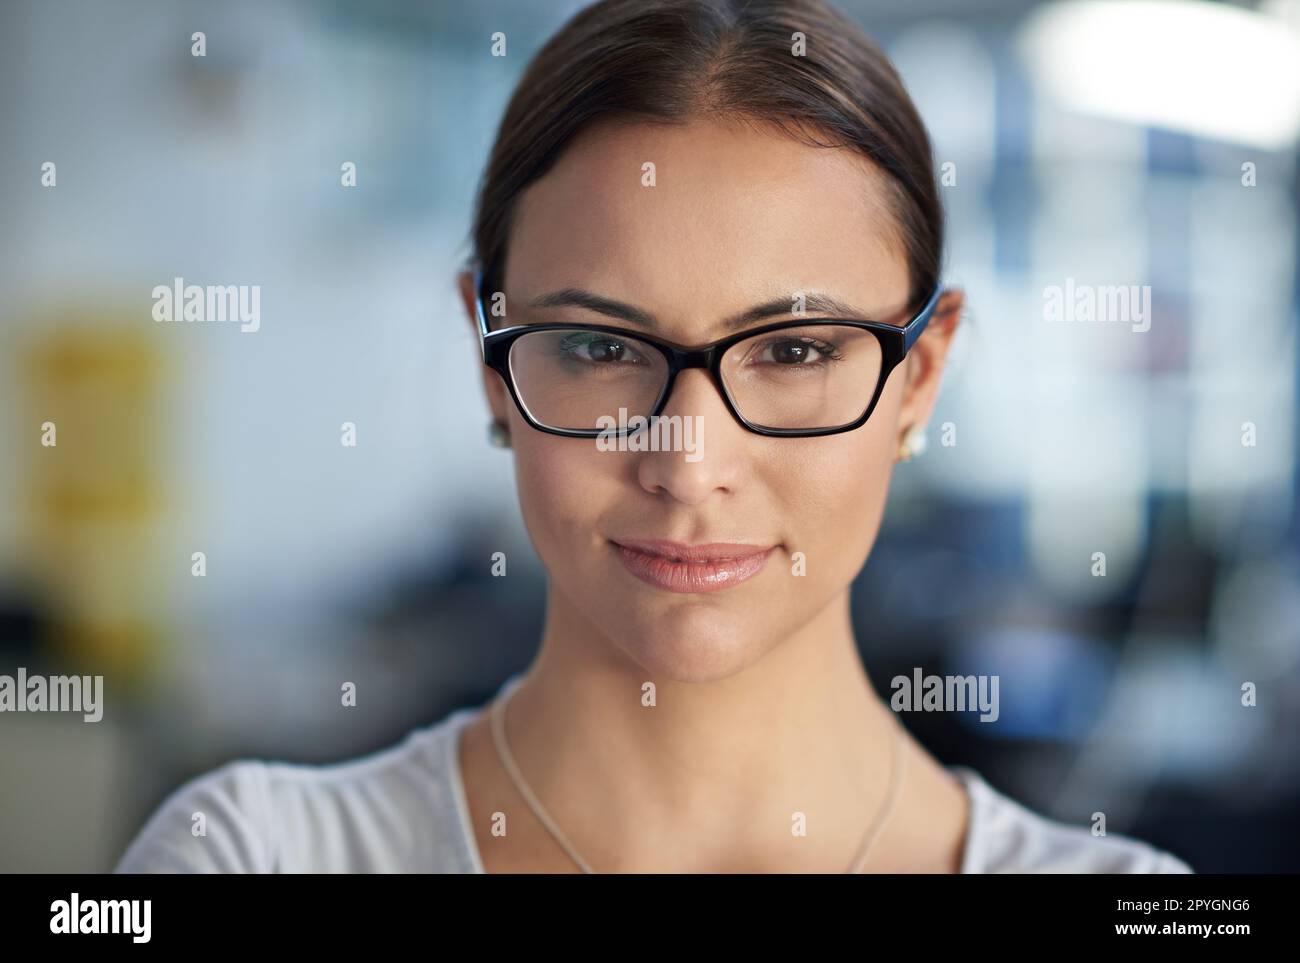 Vertrauenswürdiger Rat von einer direkten Quelle. Gekürzte Nahaufnahme einer Frau mit Brille, die direkt in die Kamera schaut. Stockfoto